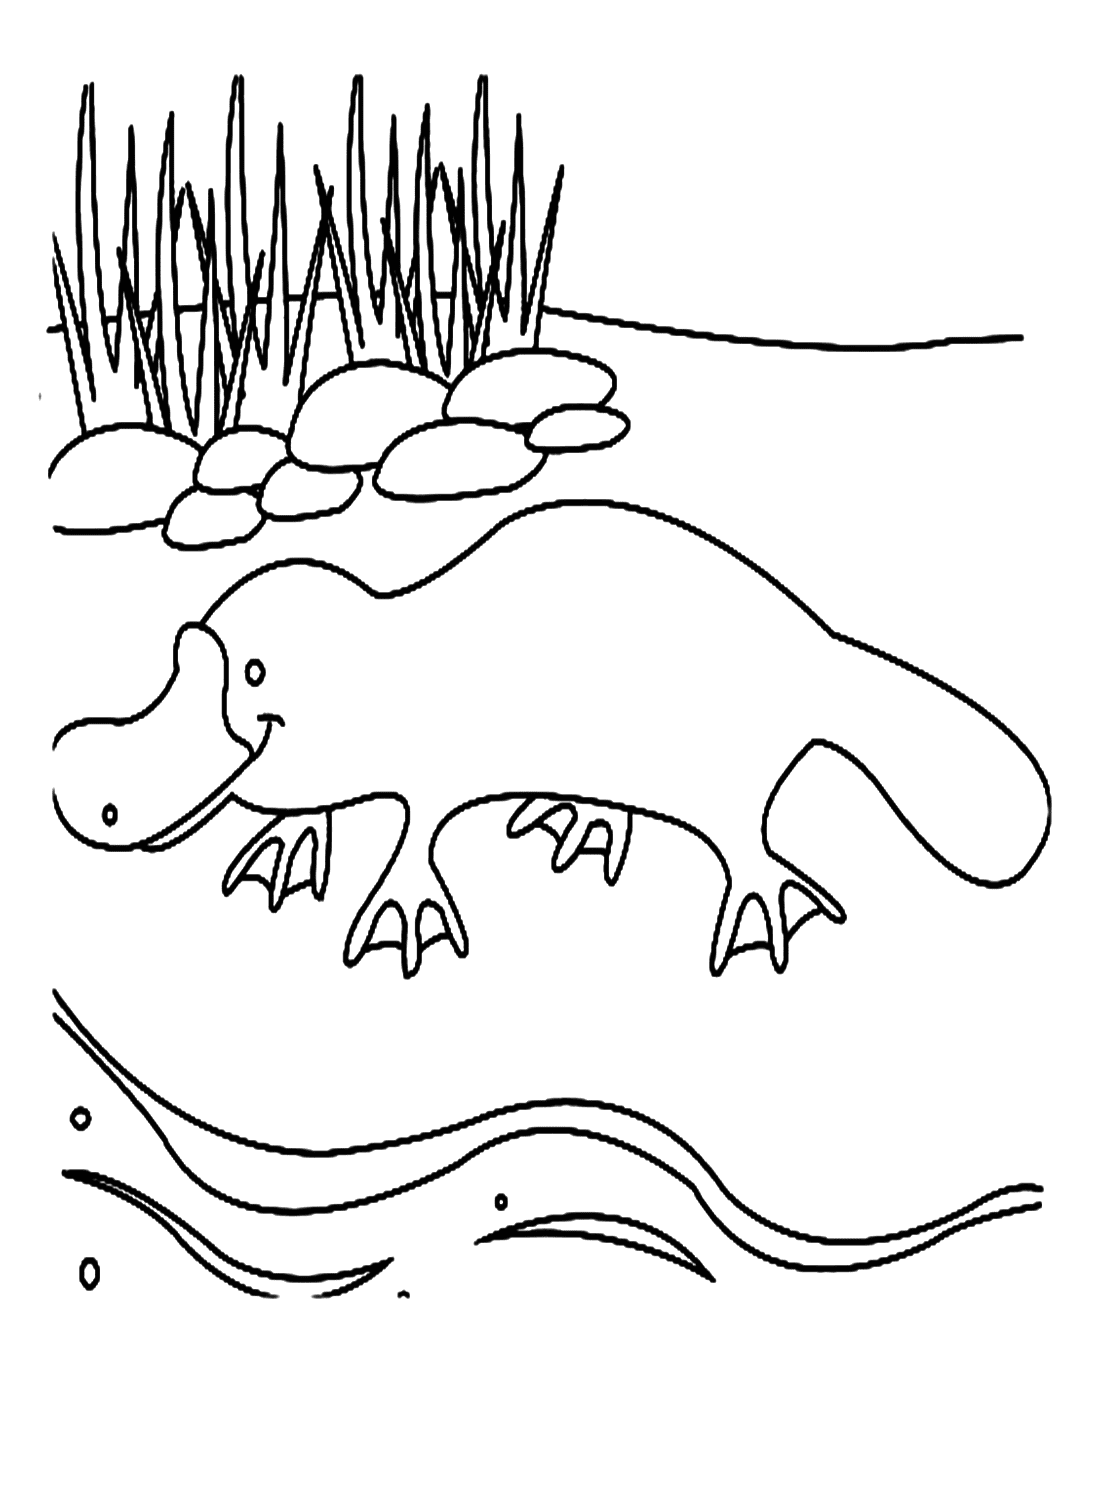 Platypus rampant de Platypus